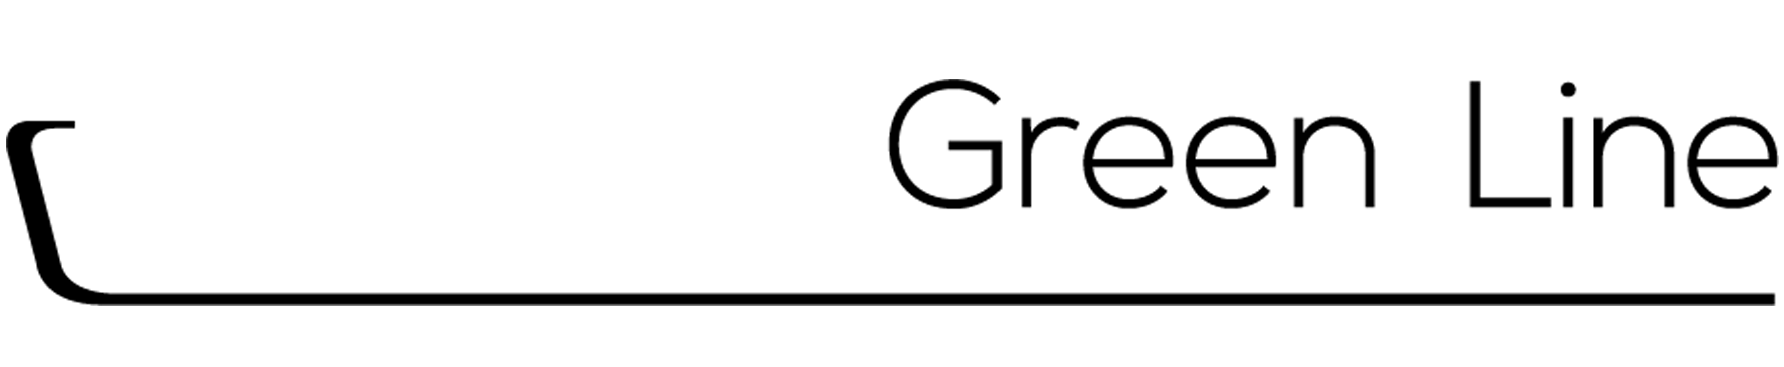 Dosatron Green Line -logo